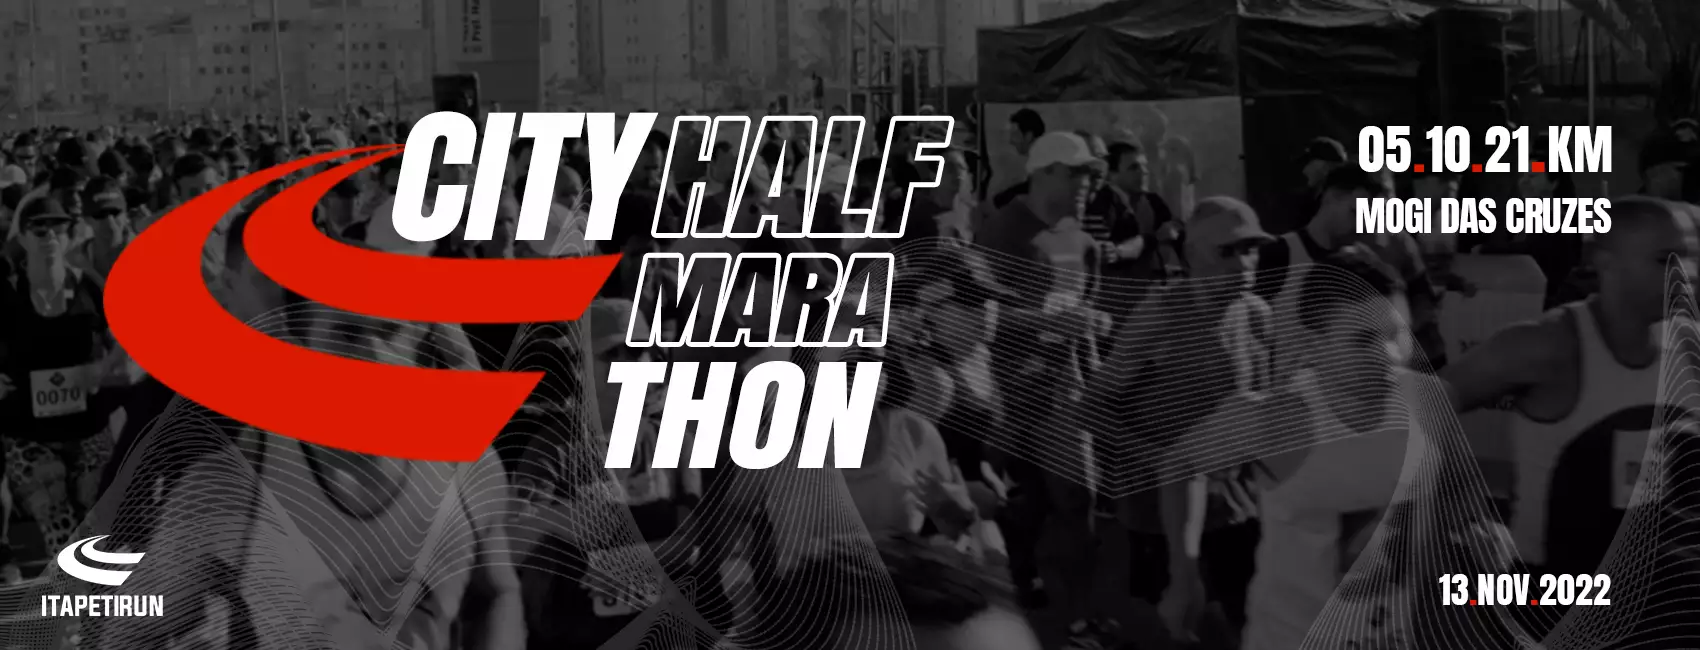 City Half Marathon Itapetirun 2022